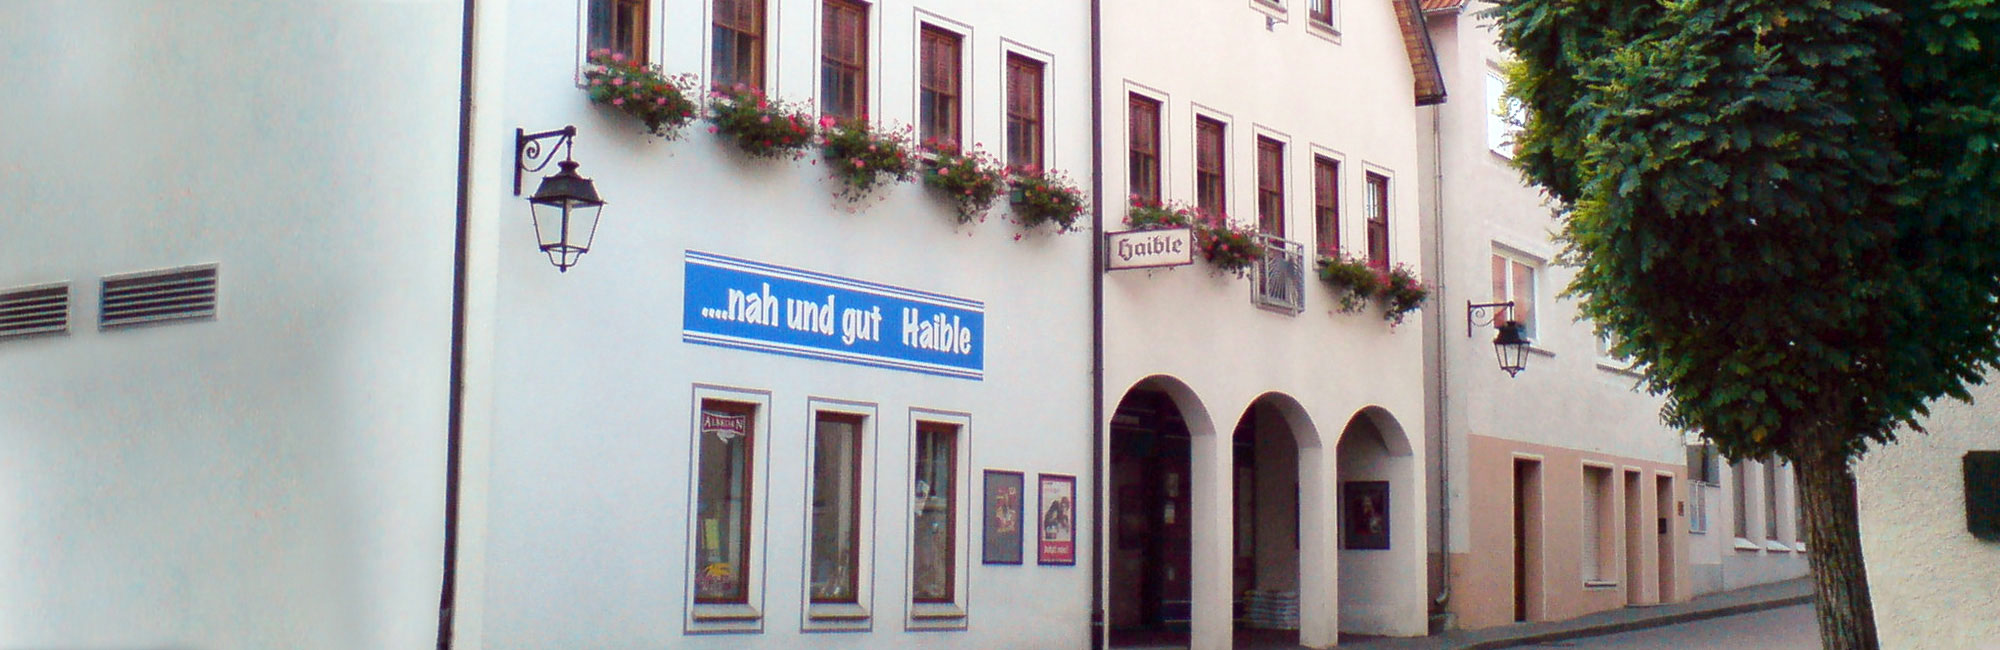 Super- und Einkaufsmarkt Nah und Gut Haible in Hayingen - Bildinhalt: Eingang Supermarkt Haible Hayingen.